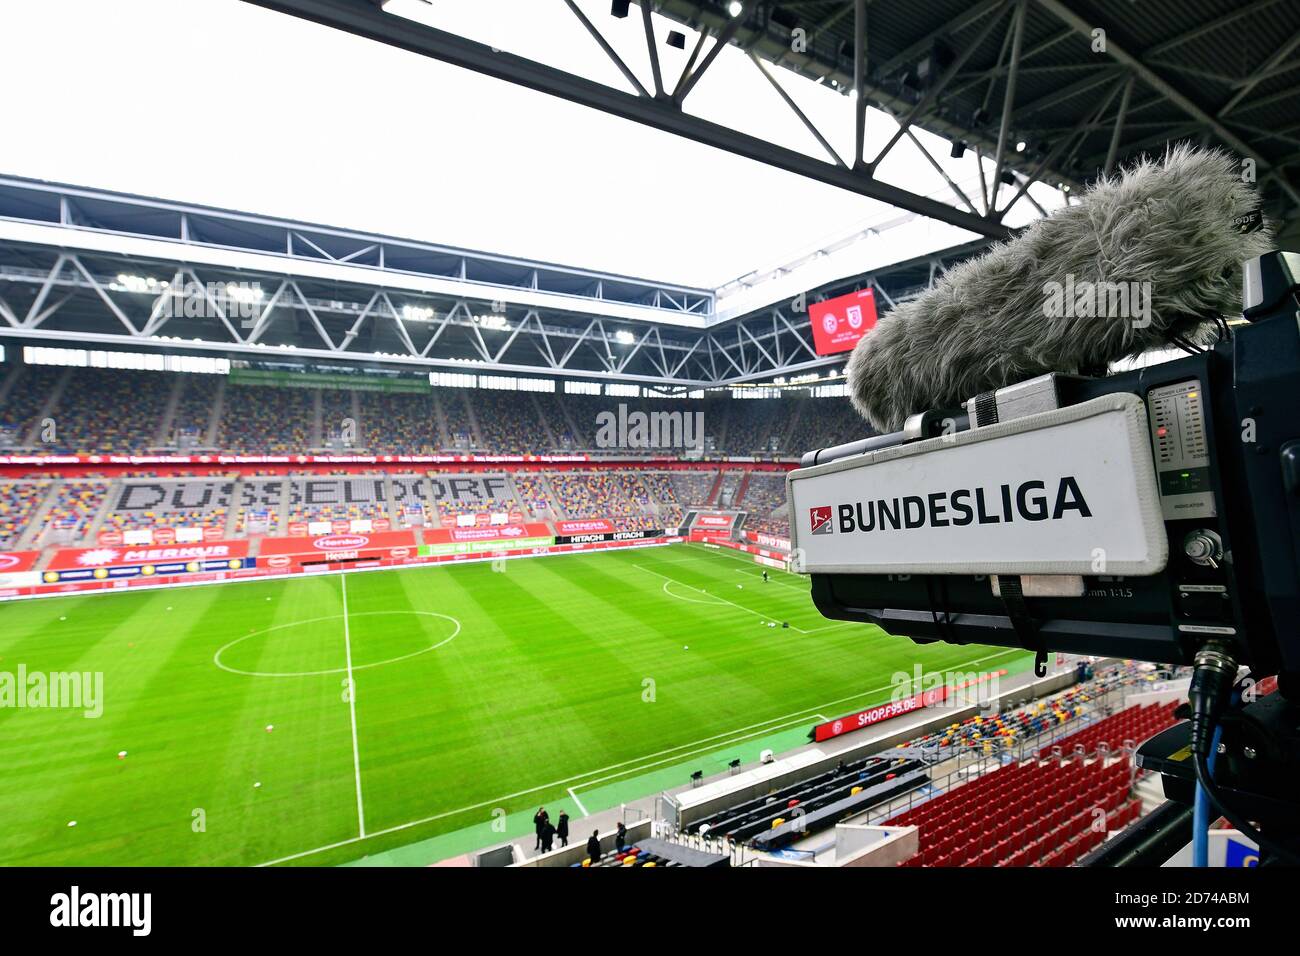 Descripción general del Merkur Spiel Arena vacío en Dusseldorf, Alemania con cámaras de TV. Foto de stock